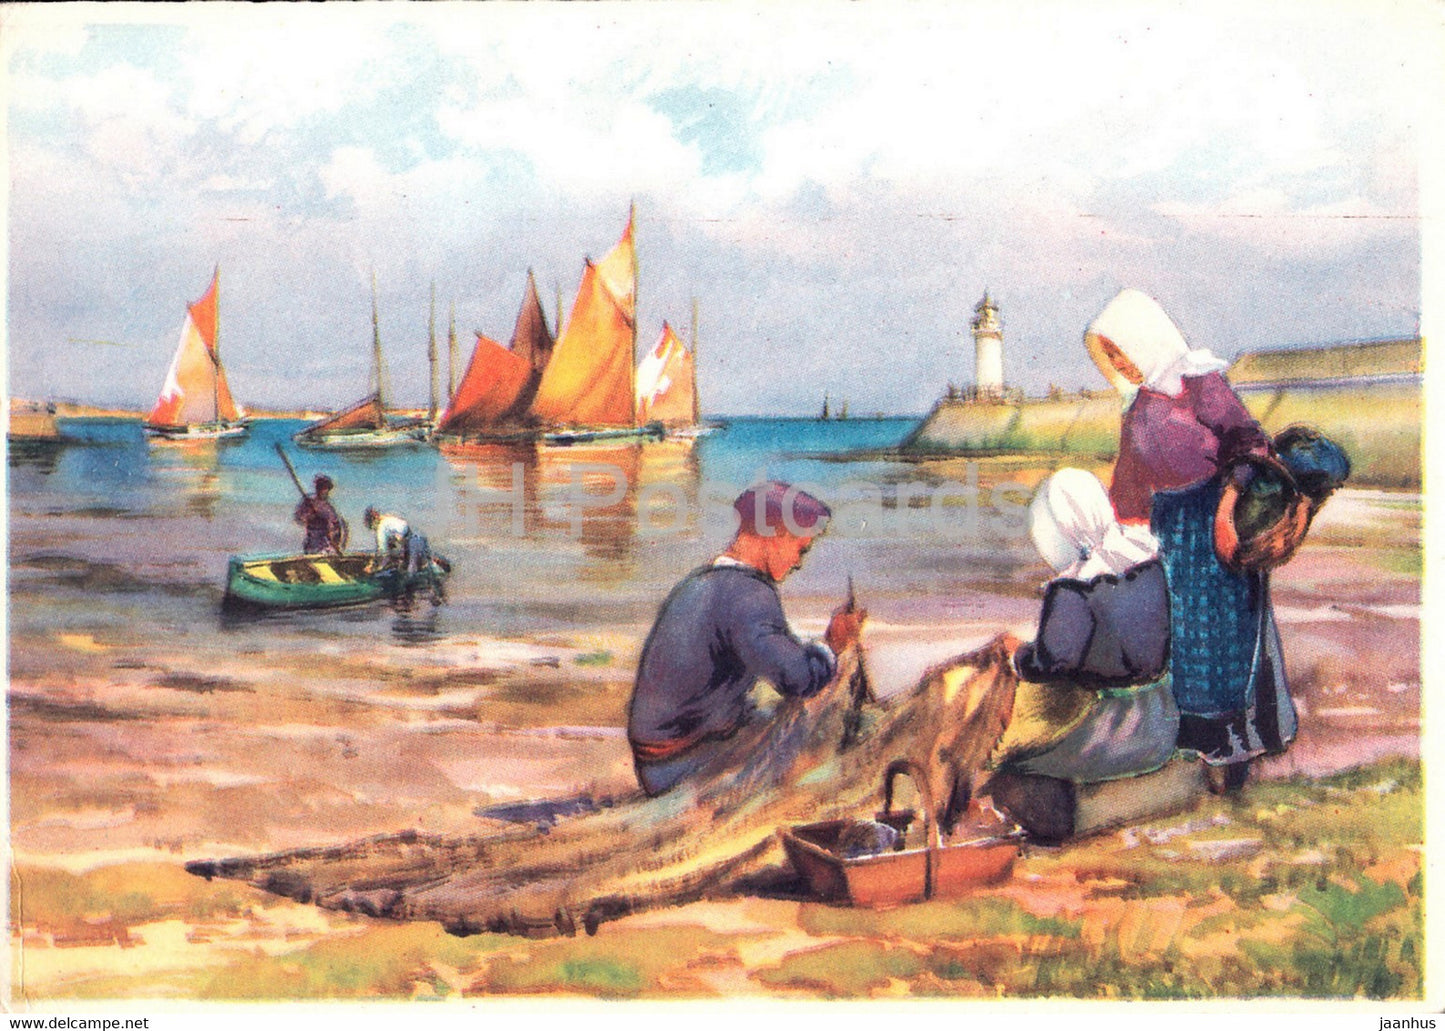 painting - sea - fisherman - 1002 - boat - France - unused - JH Postcards